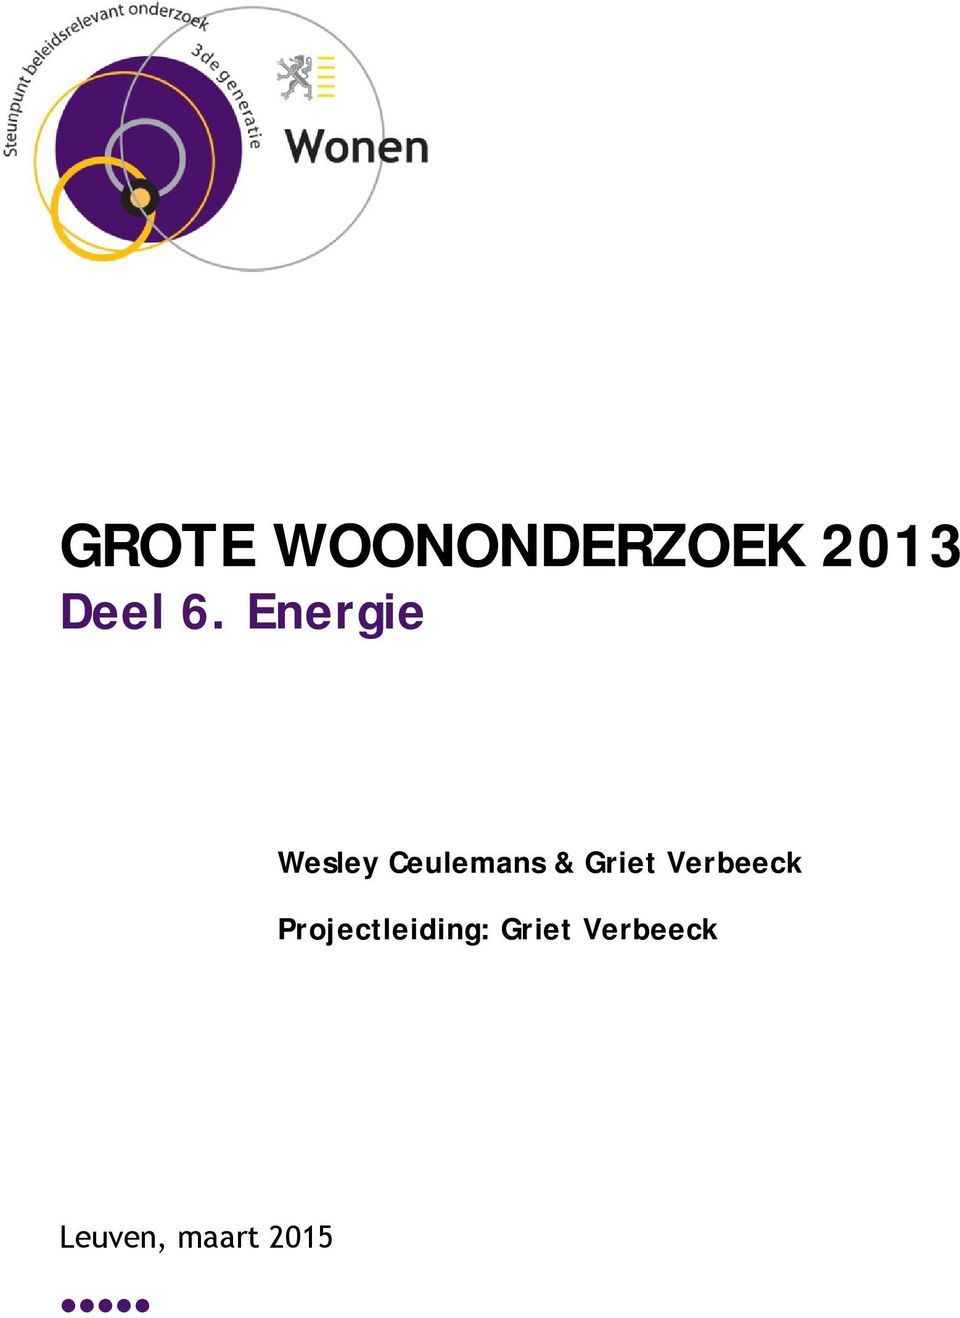 Griet Verbeeck Projectleiding: